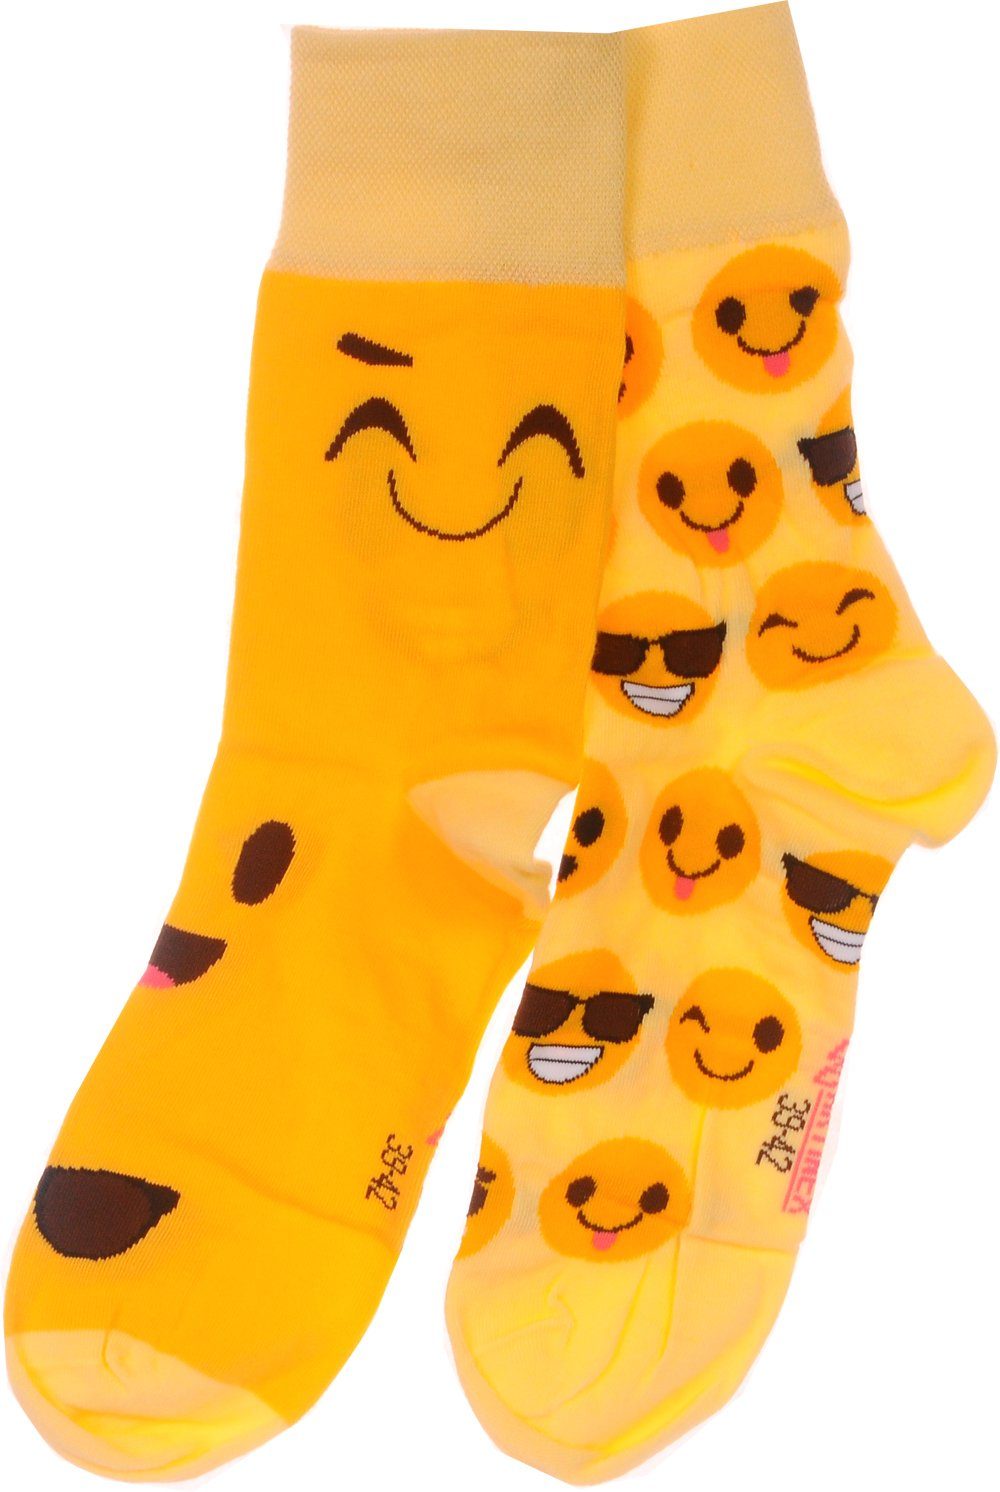 Martinex Socken 1 Paar Socken lustige bunte witzige Strümpfe 35 38 39 42 43 46